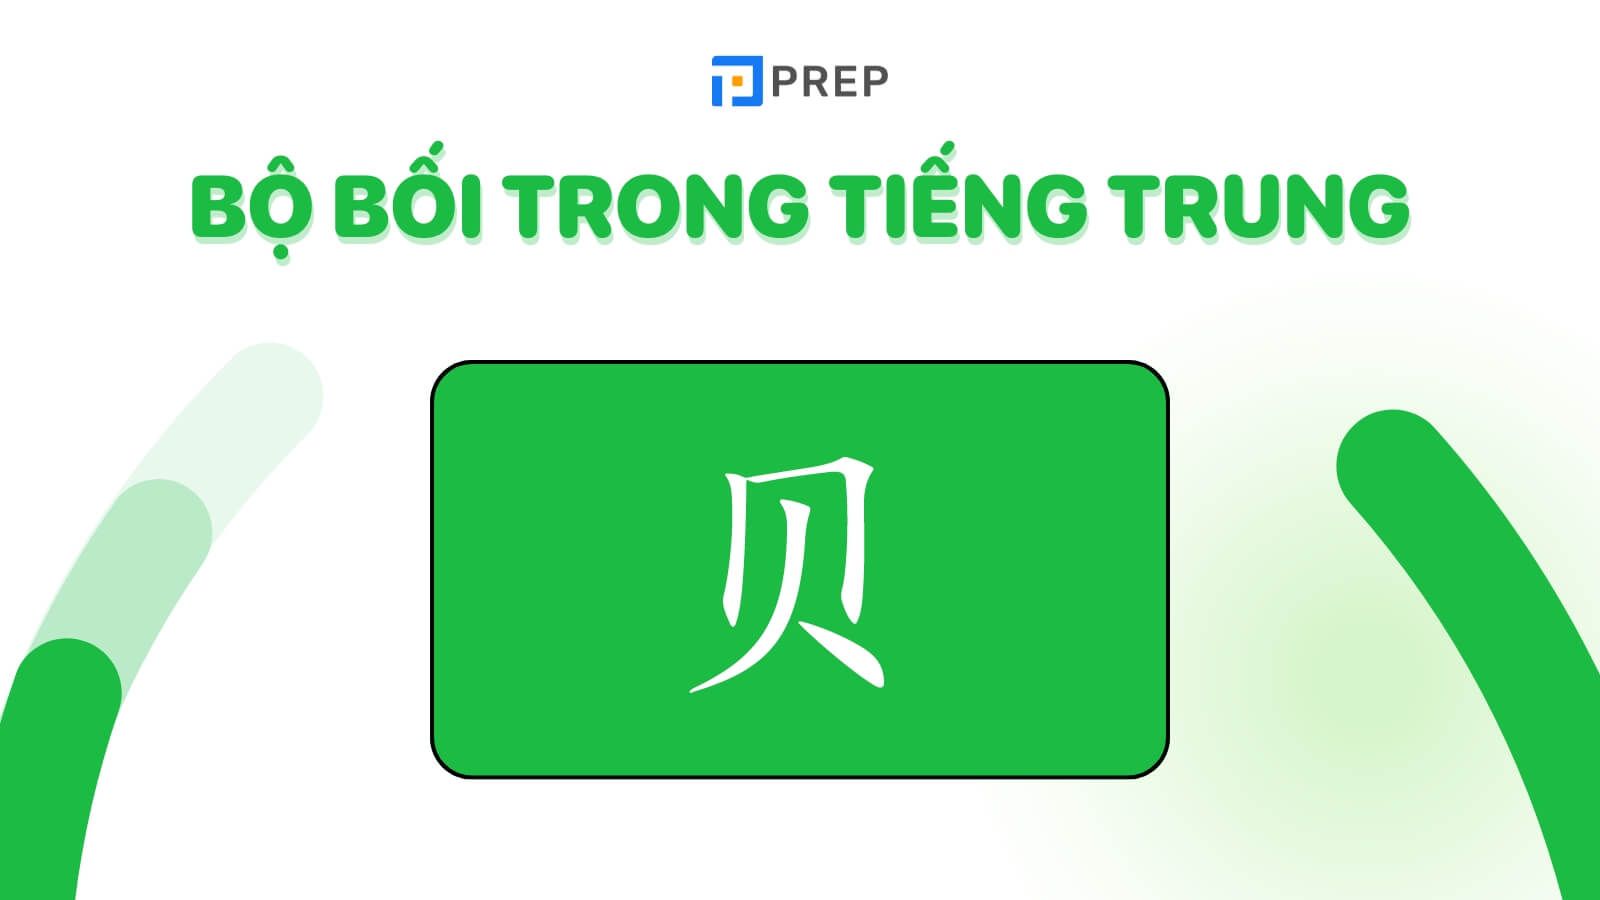 Bộ Bối trong tiếng Trung là gì?